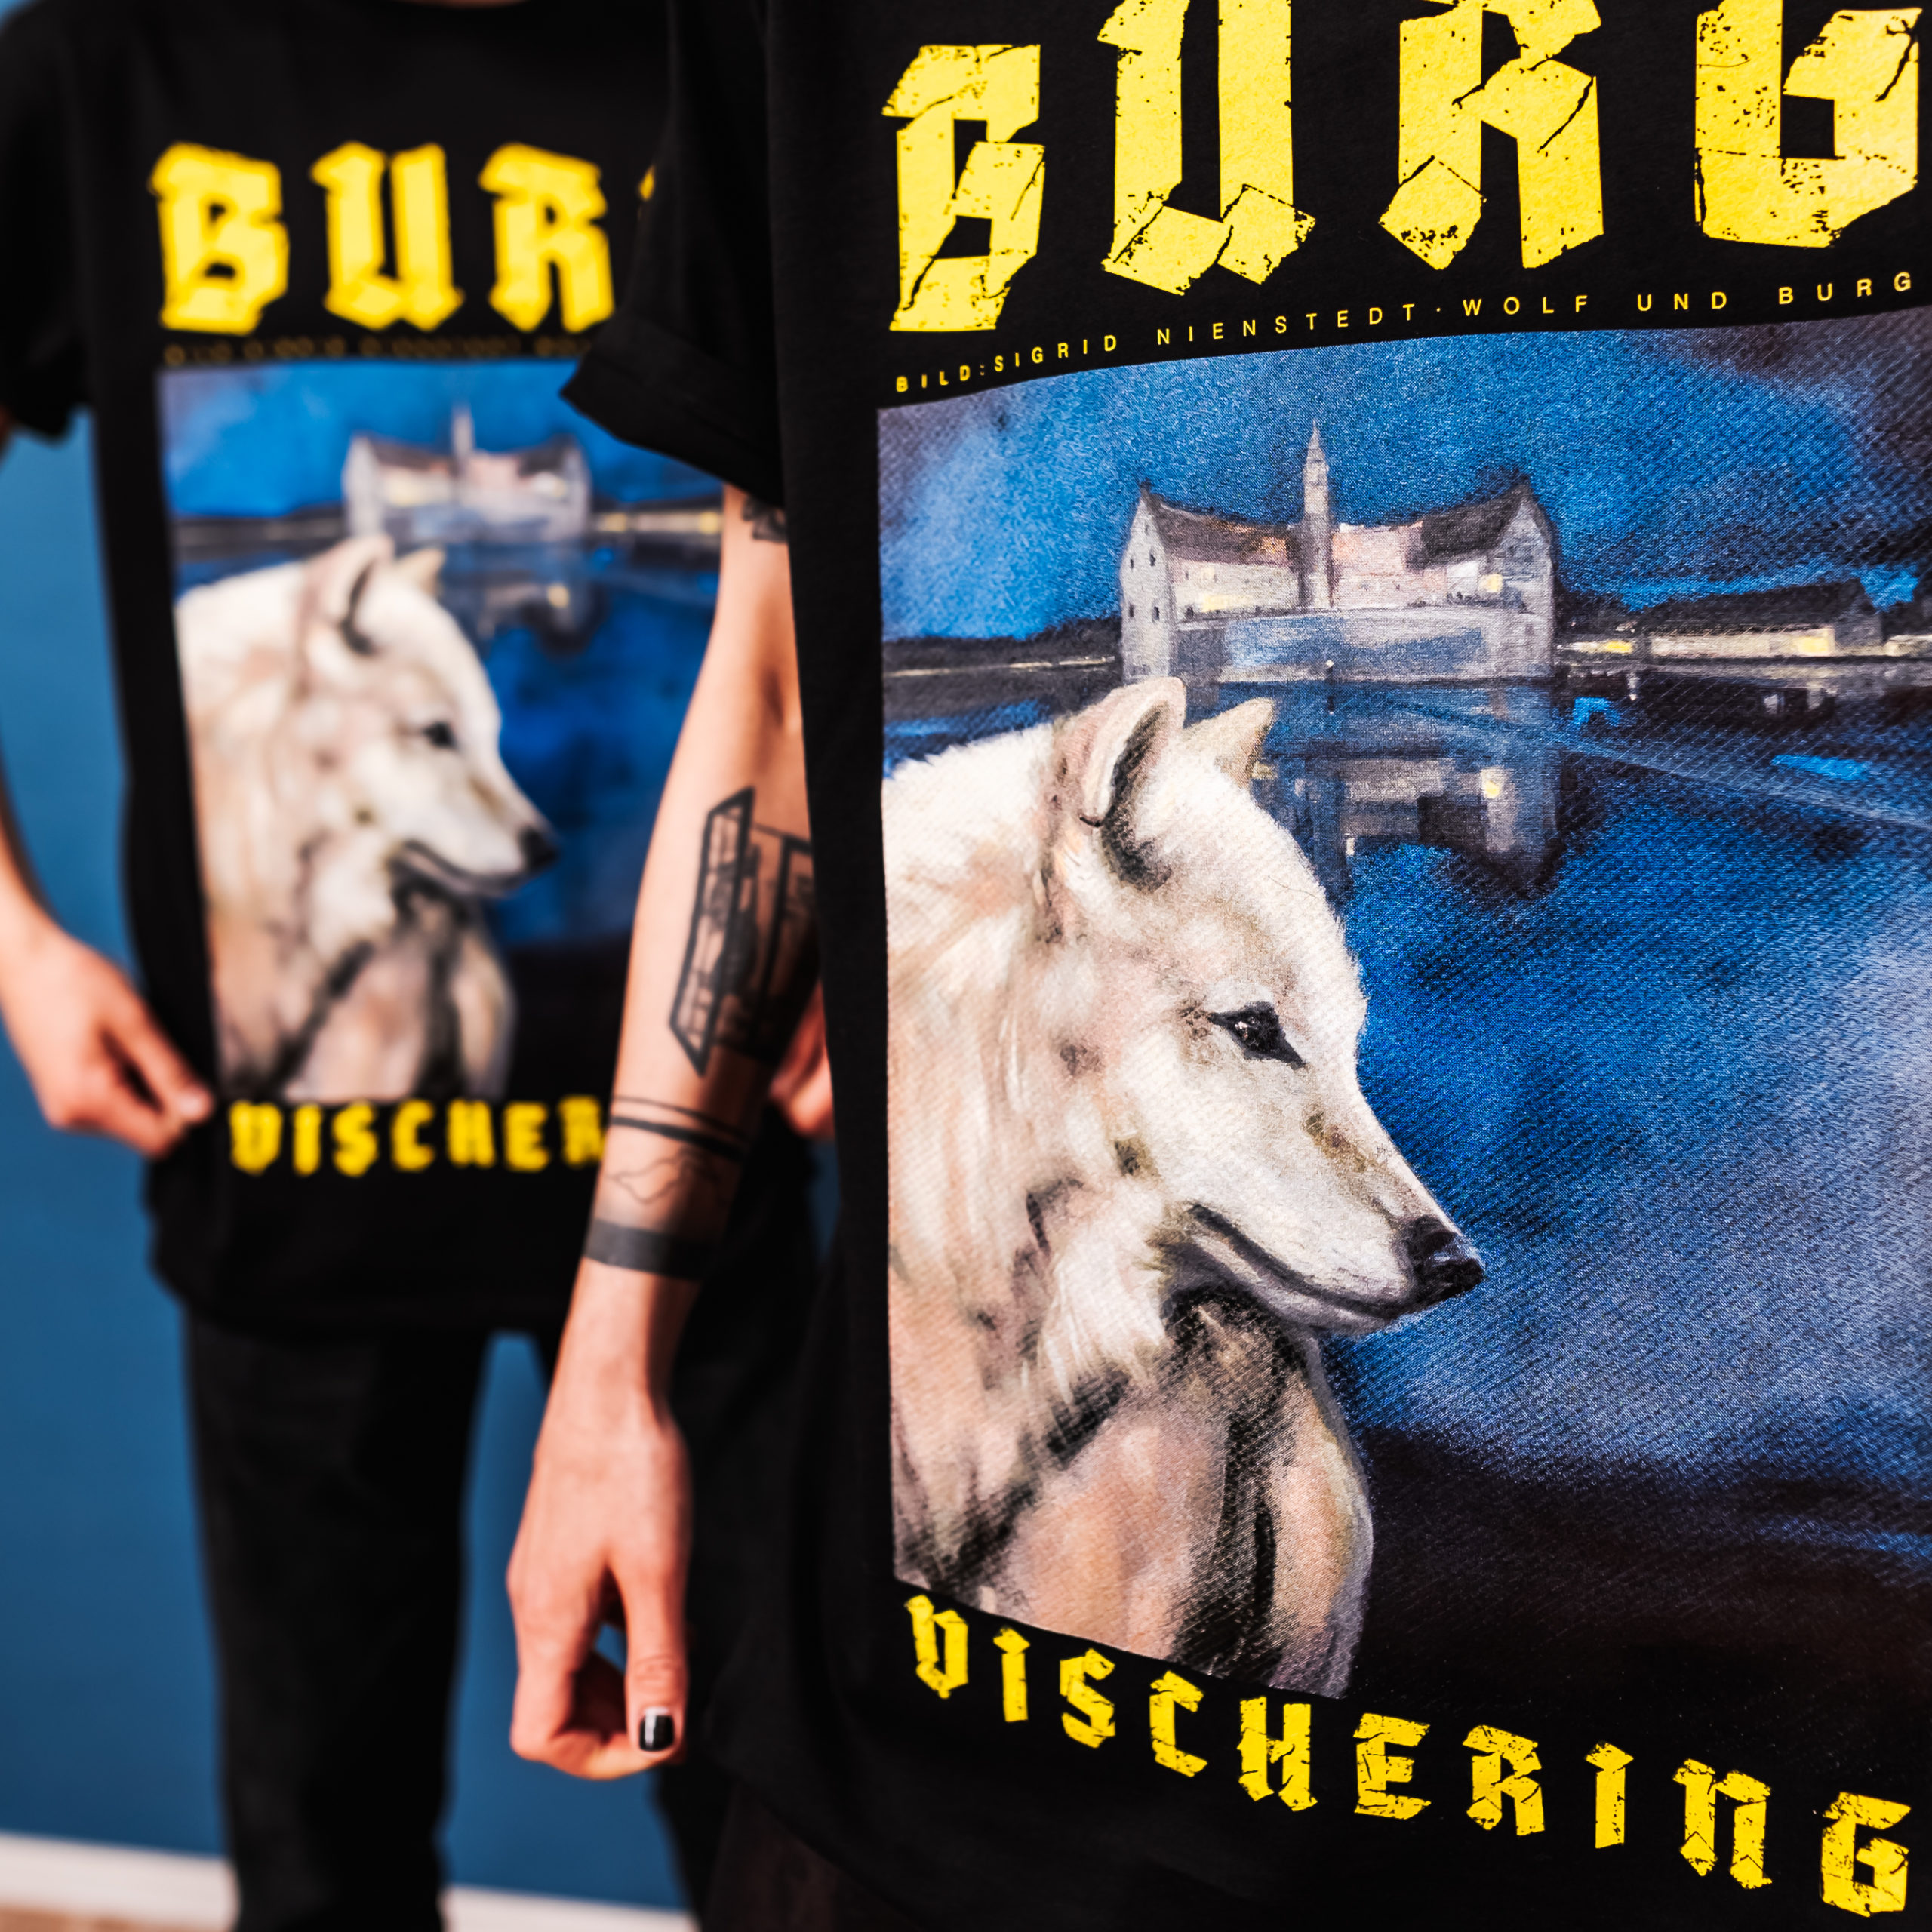 Wolfshirt-Merchandise-Burg-Vischering-Sigrid-Nienstedt